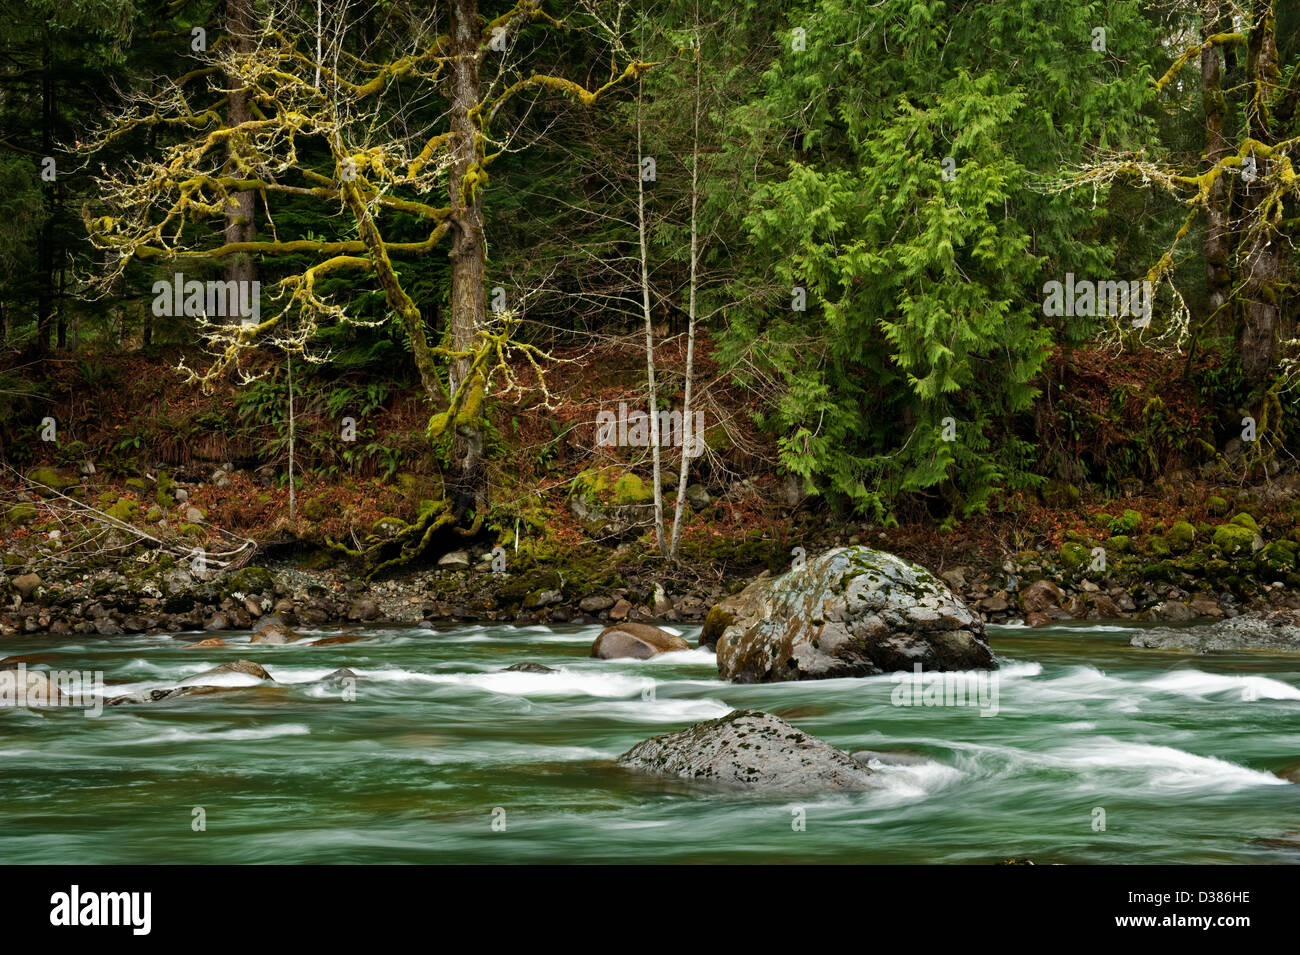 Le milieu de la fourche de la rivière Snoqualmie dans l'ouest de l'État de Washington est une belle rivière qui coule dans un environnement de forêt tropicale. Banque D'Images